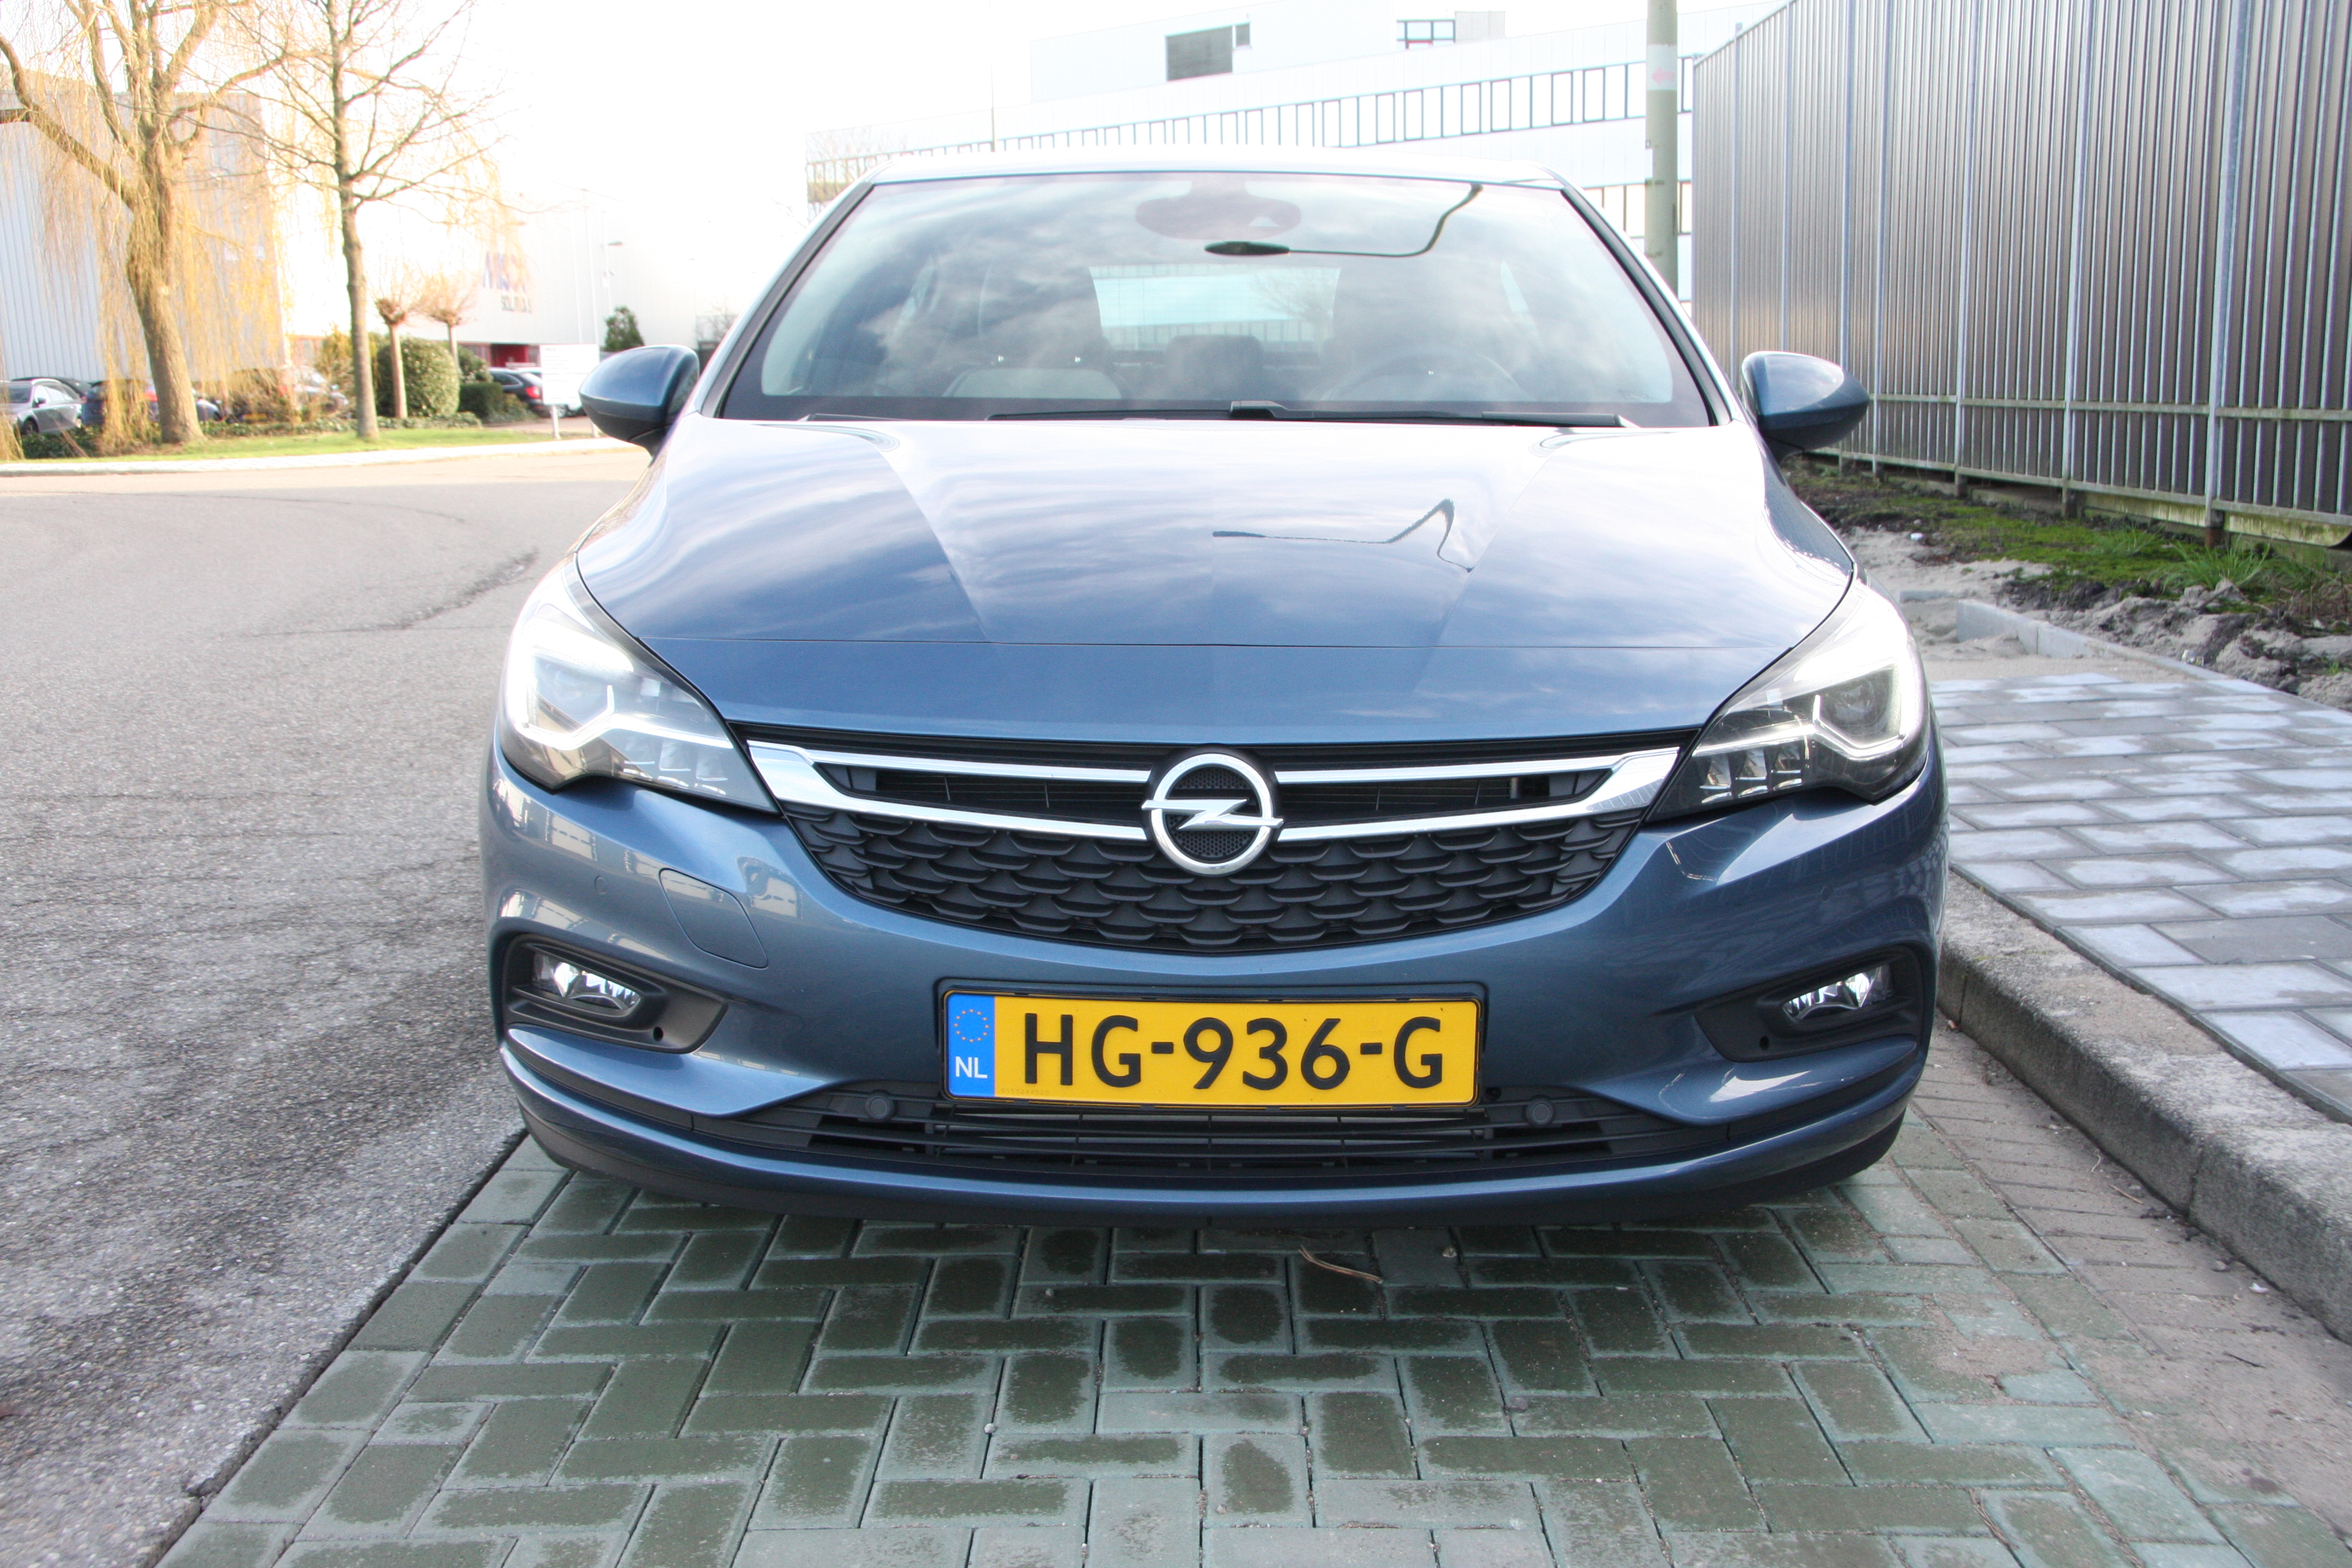 bezoeker Interesseren mate Rijtest Opel Astra met OnStar Assistentie